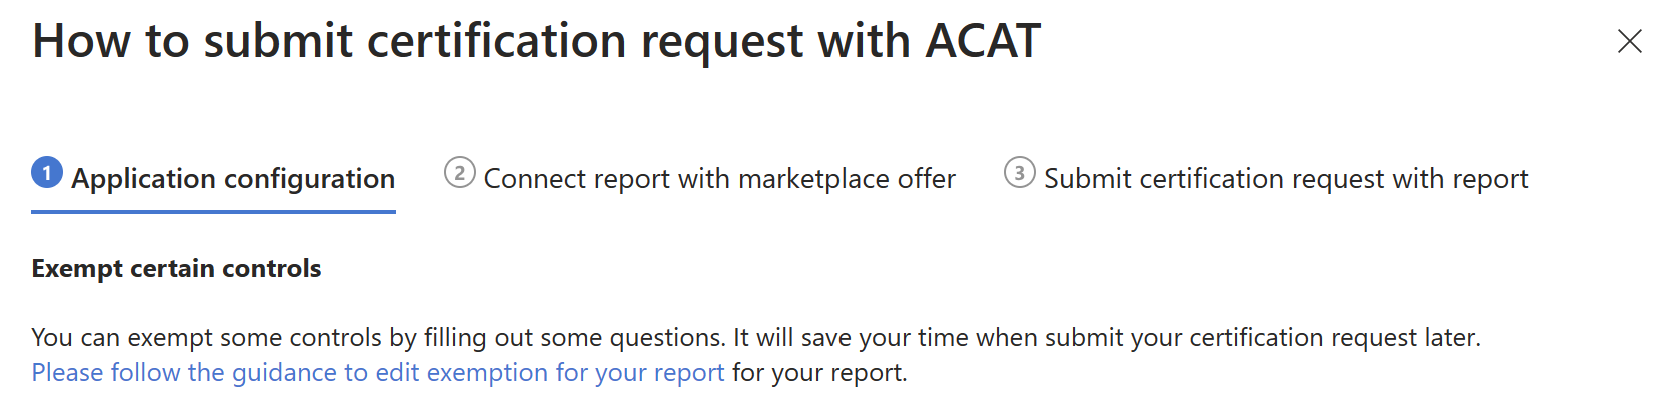 Conseils sur la soumission de la certification avec ACAT